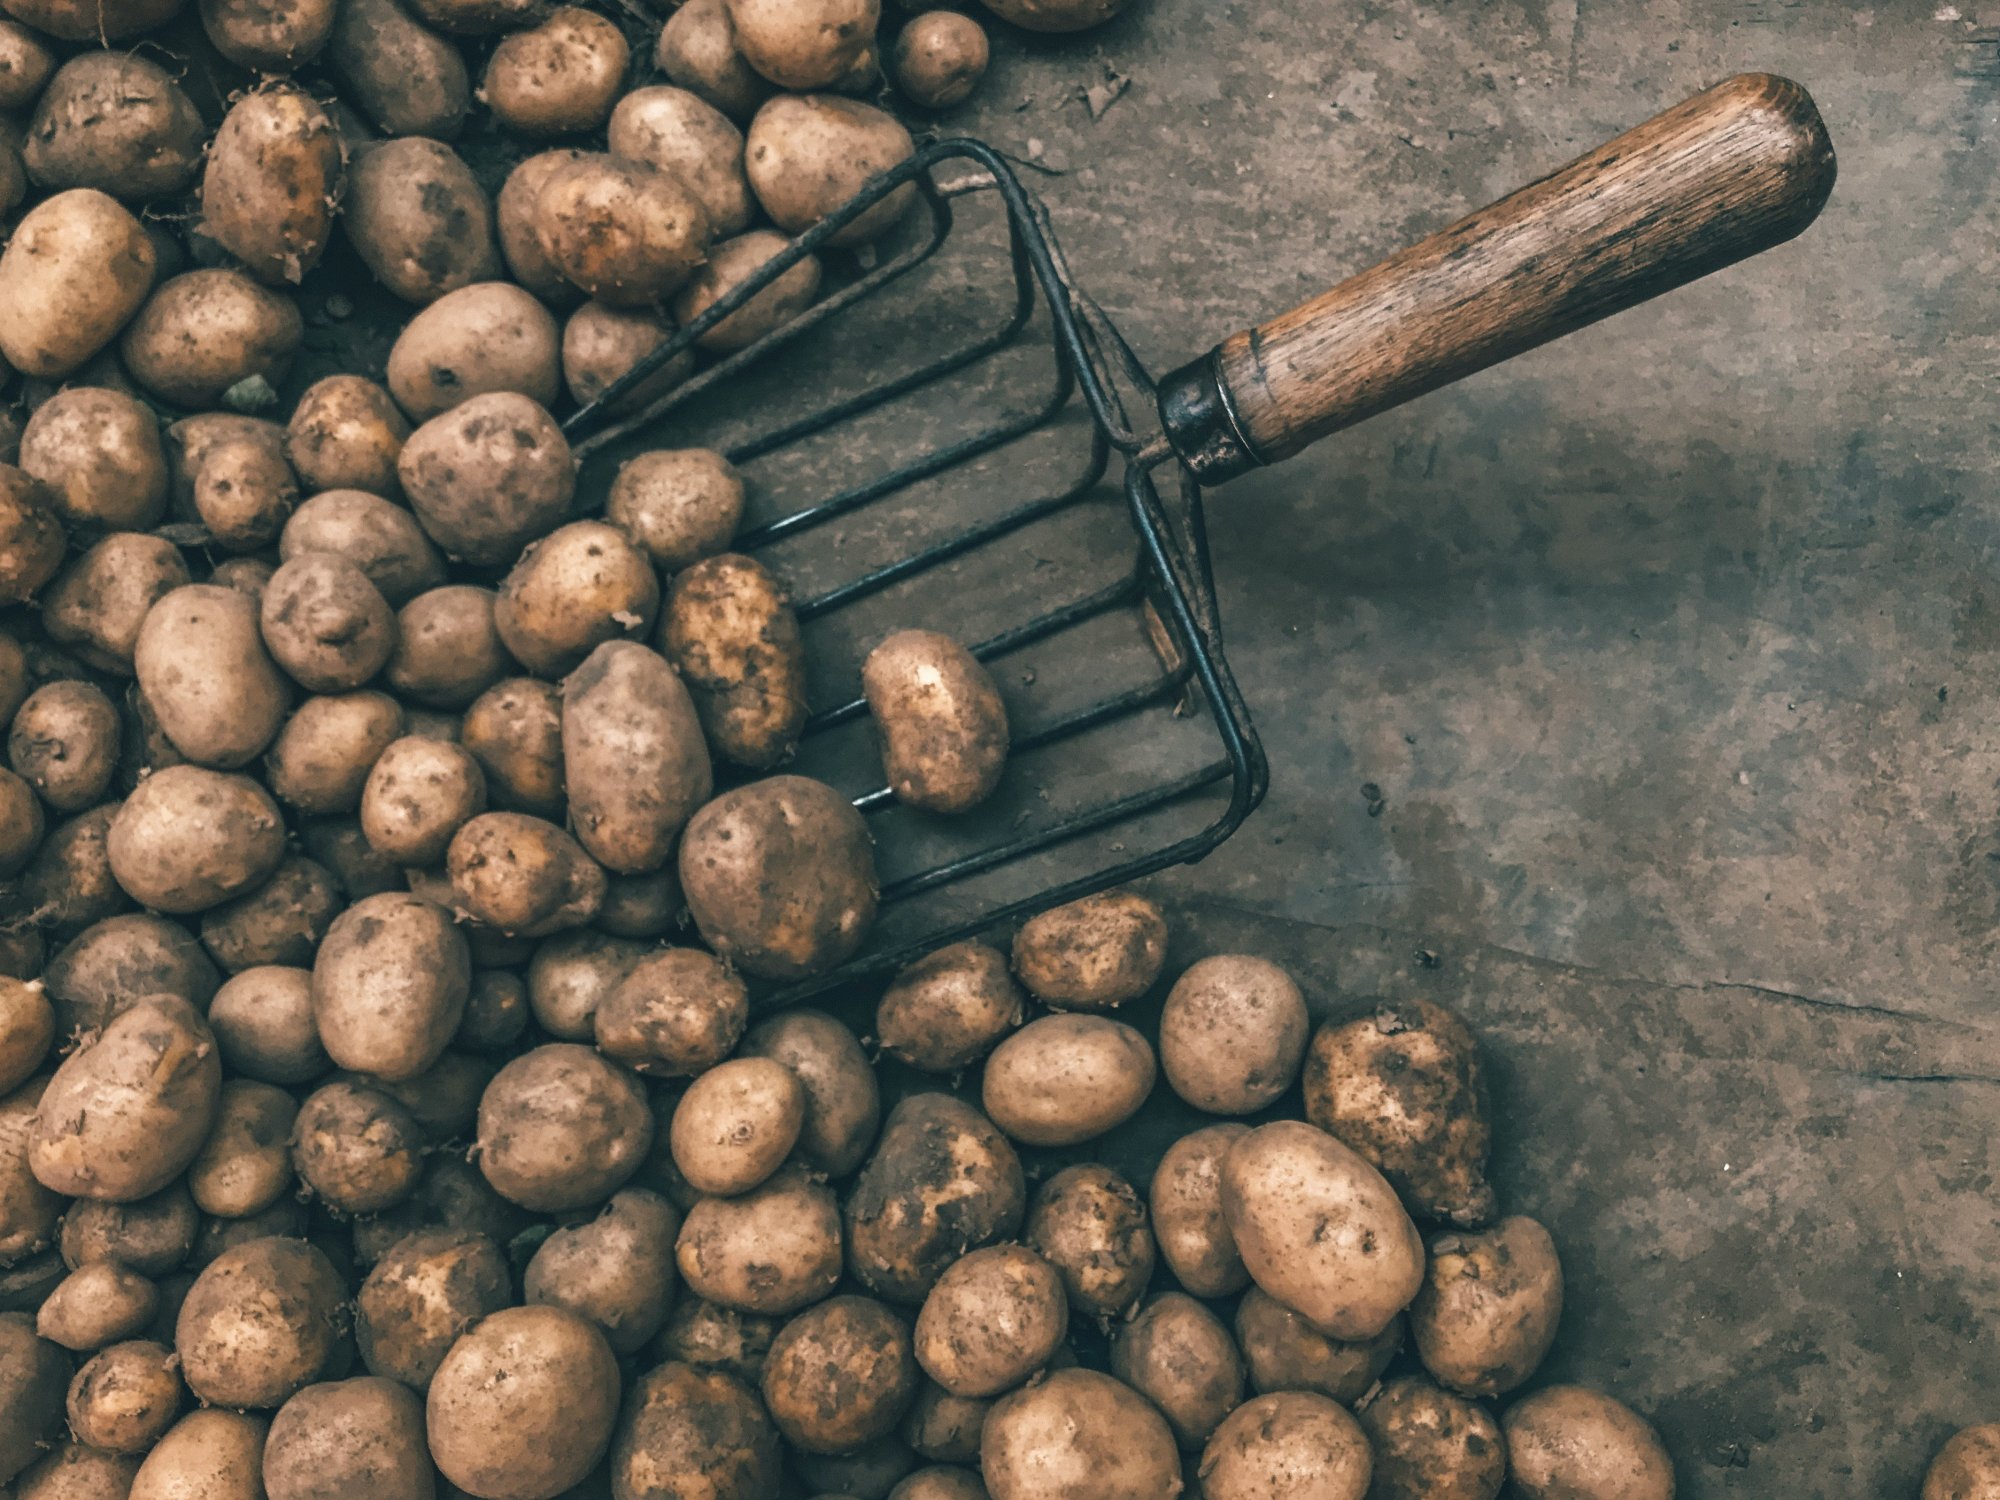 Ελληνική πατάτα: Είδος προς εξαφάνιση σε πολλές περιοχές